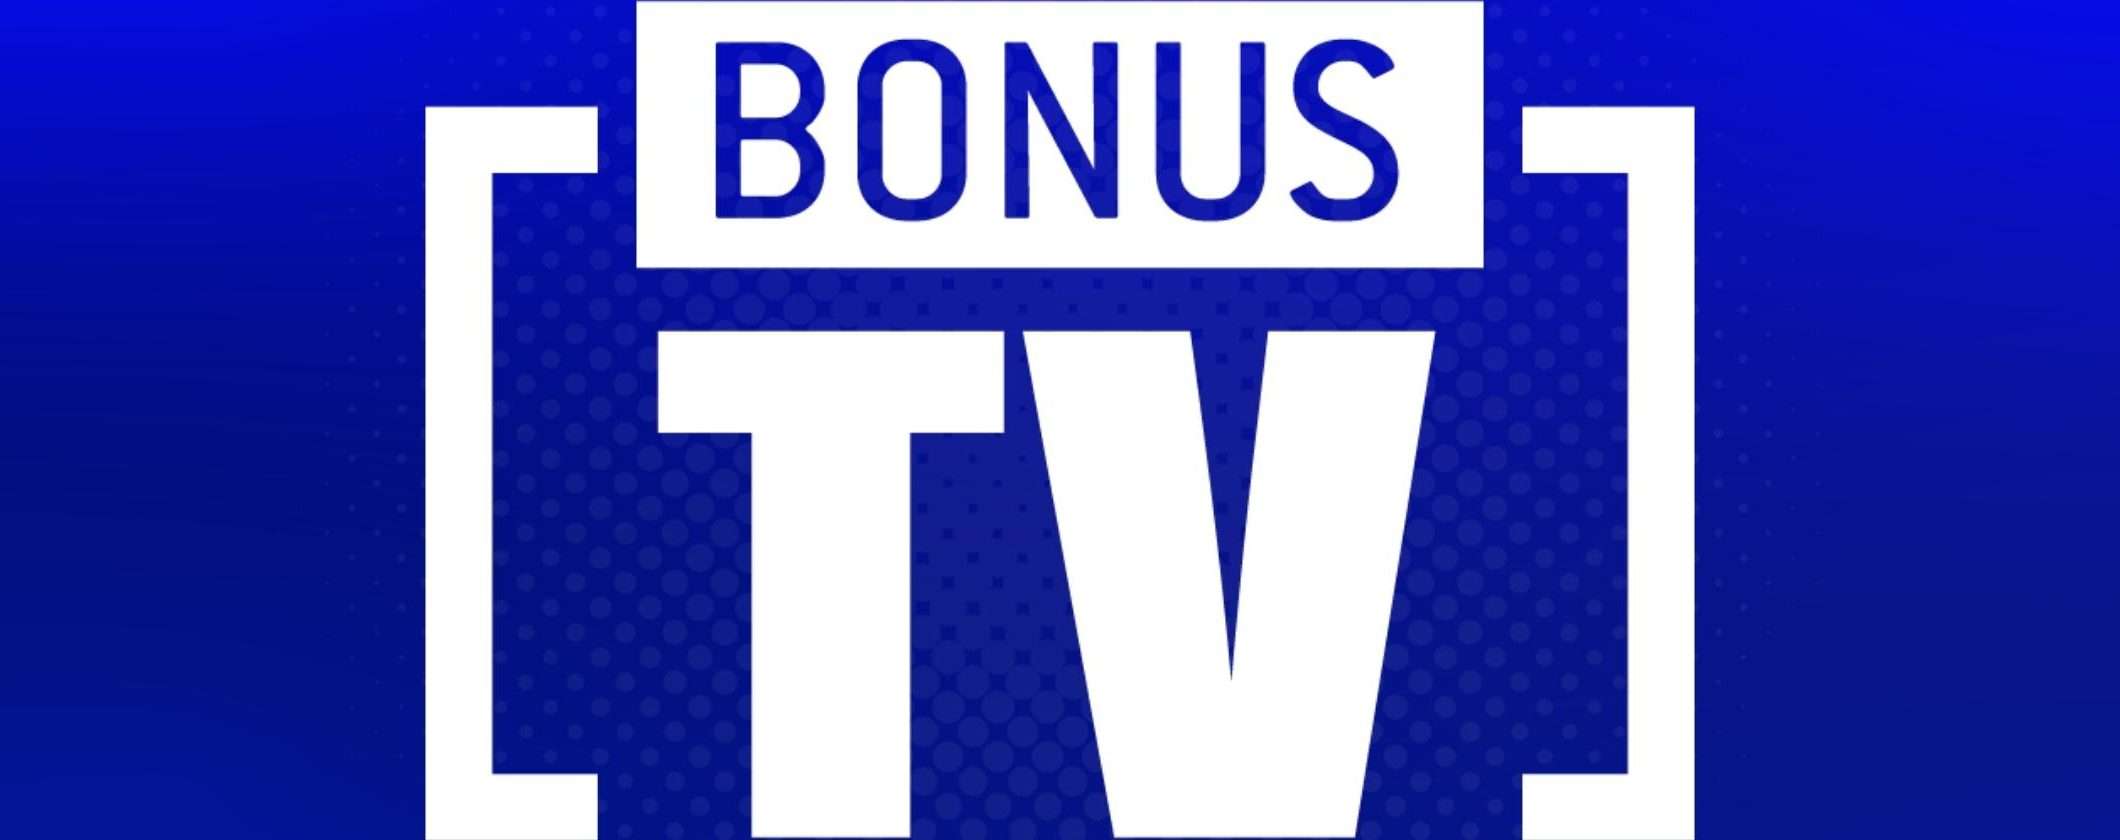 Bonus TV: verifica se hai diritto all'incentivo